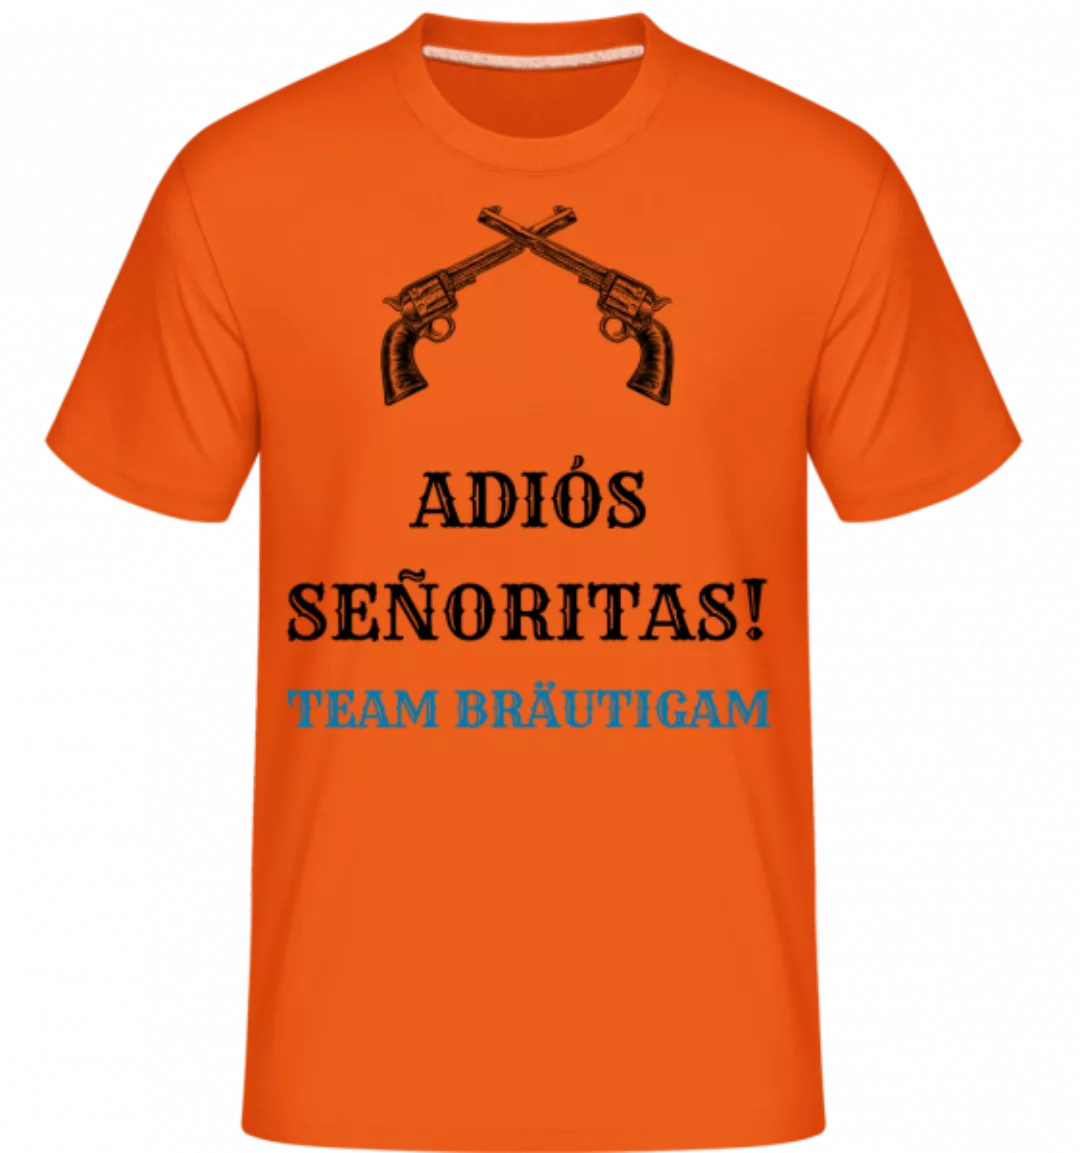 Adiós Señoritas Team Bräutigam · Shirtinator Männer T-Shirt günstig online kaufen